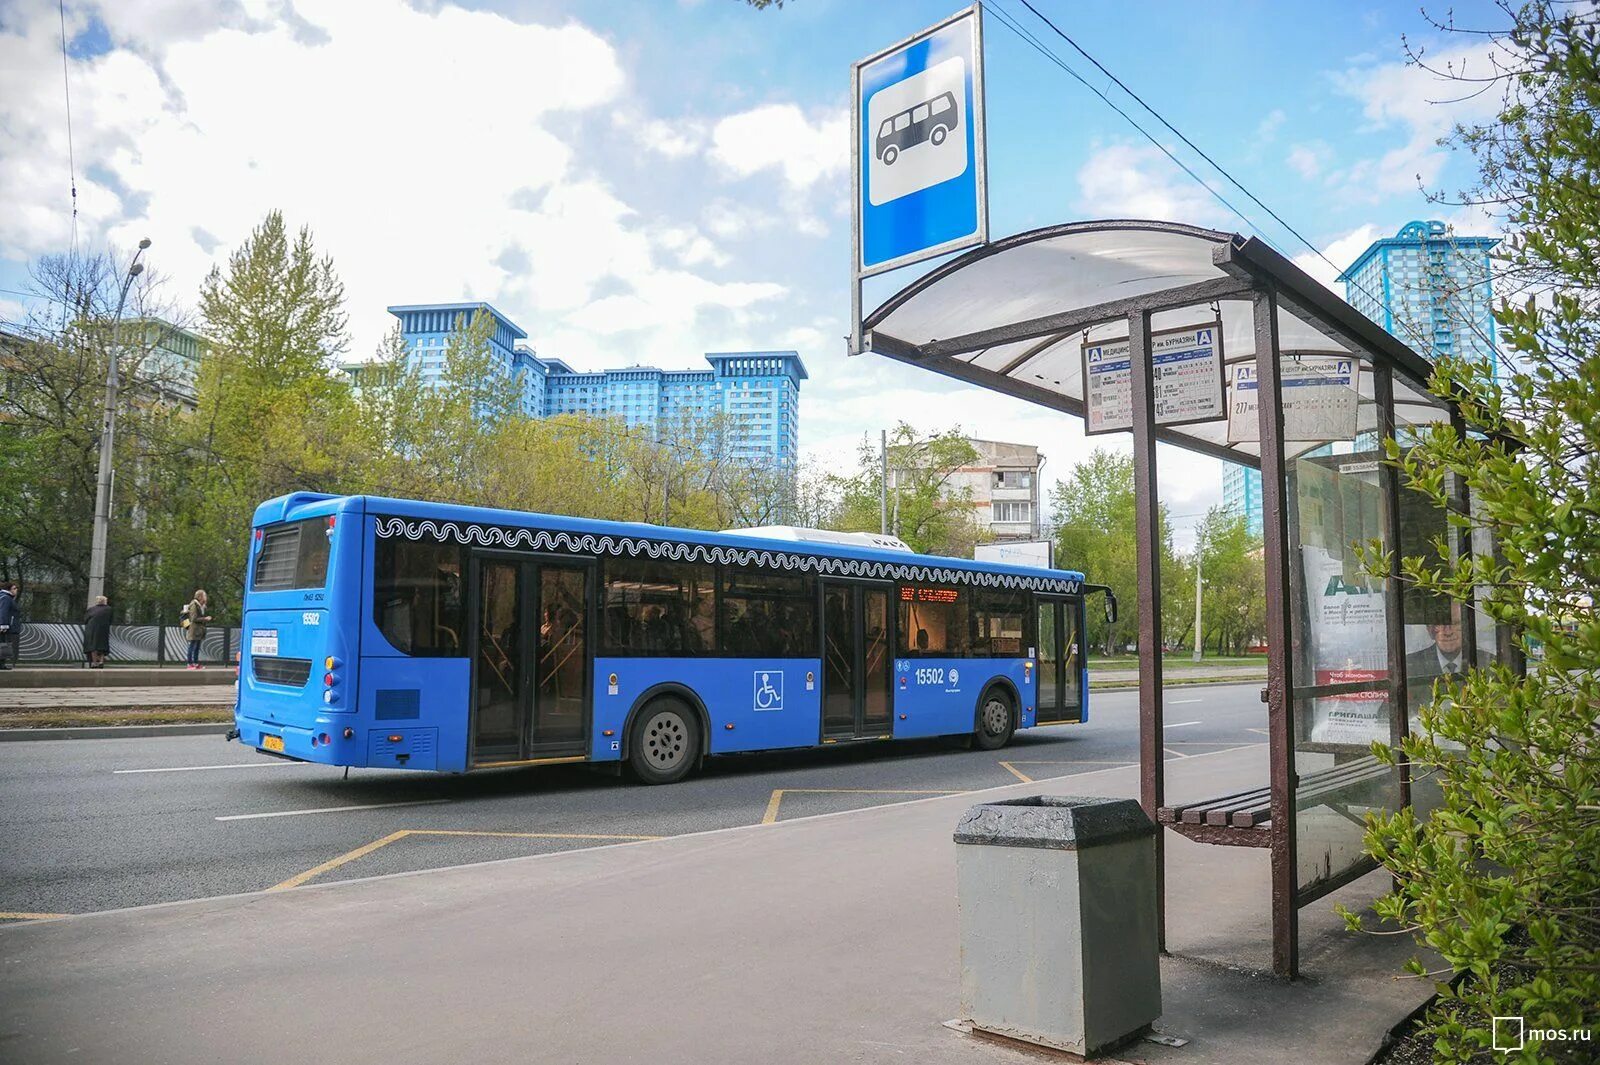 На автобусной остановке остановился автобус. Остановка автобуса. Автобусная остановка Москва. Автобусная остановка с автобусом. Красивые транспортные остановки.